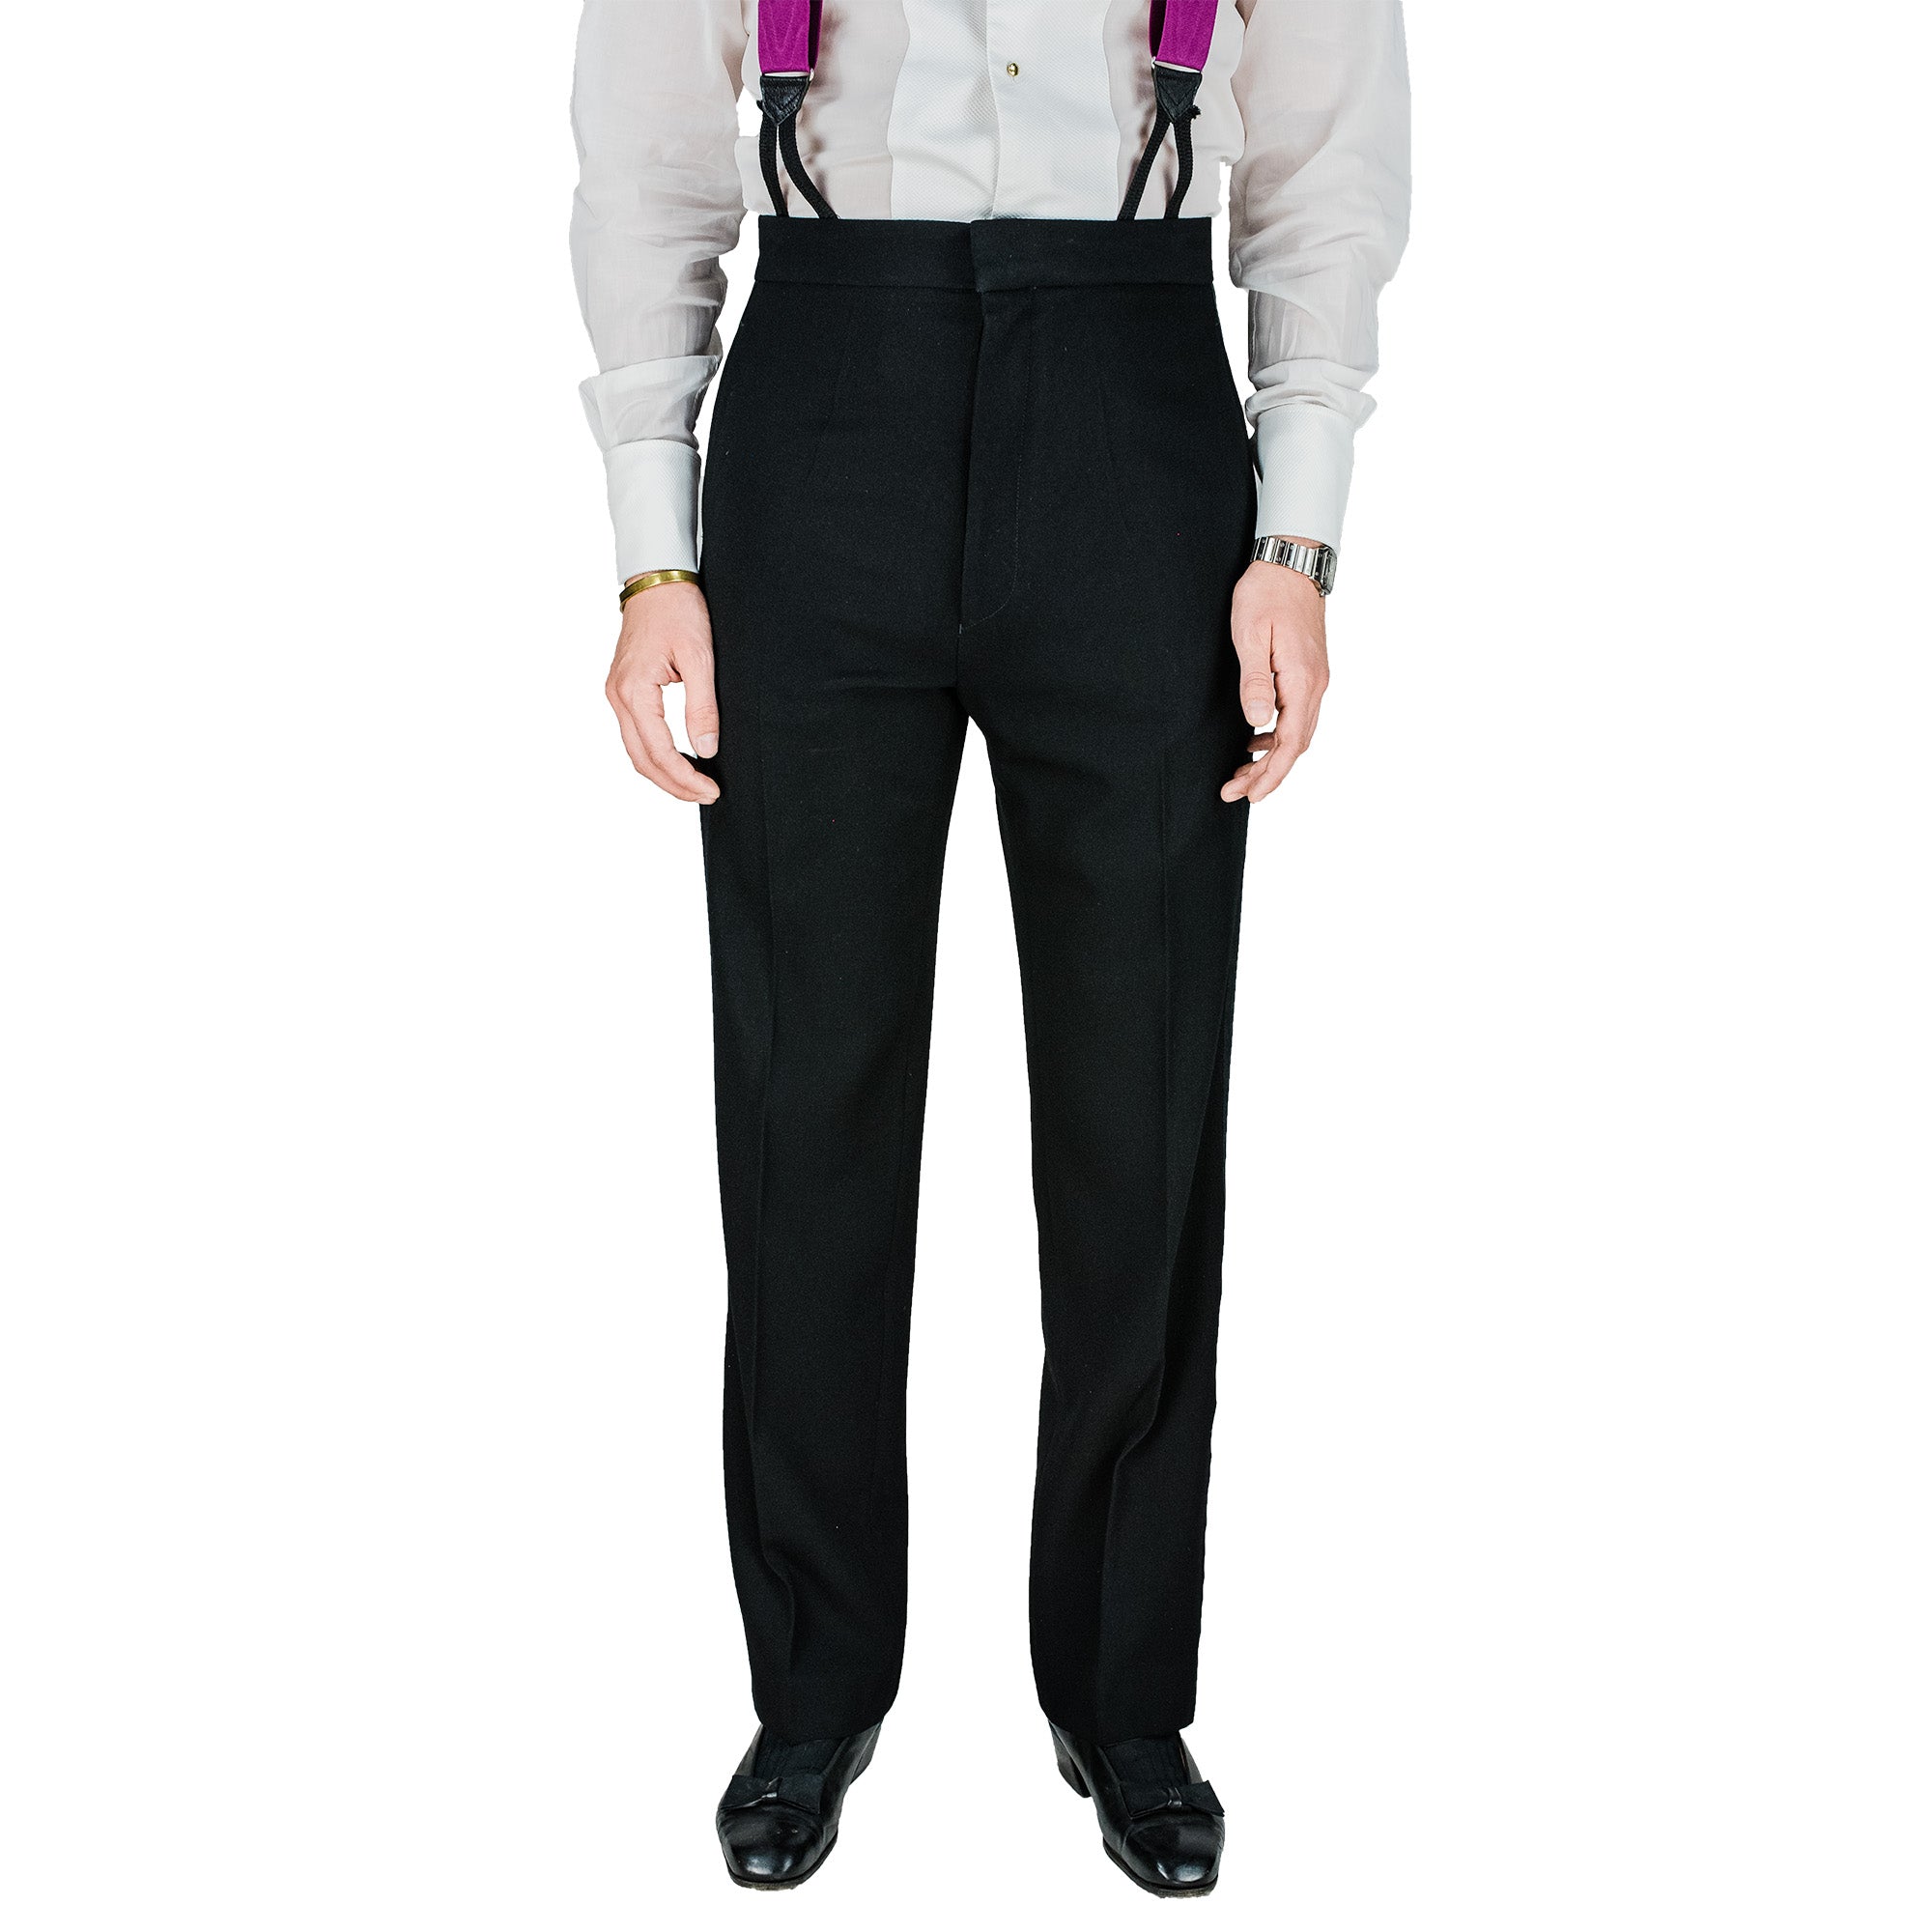 Suit - Tuxedo